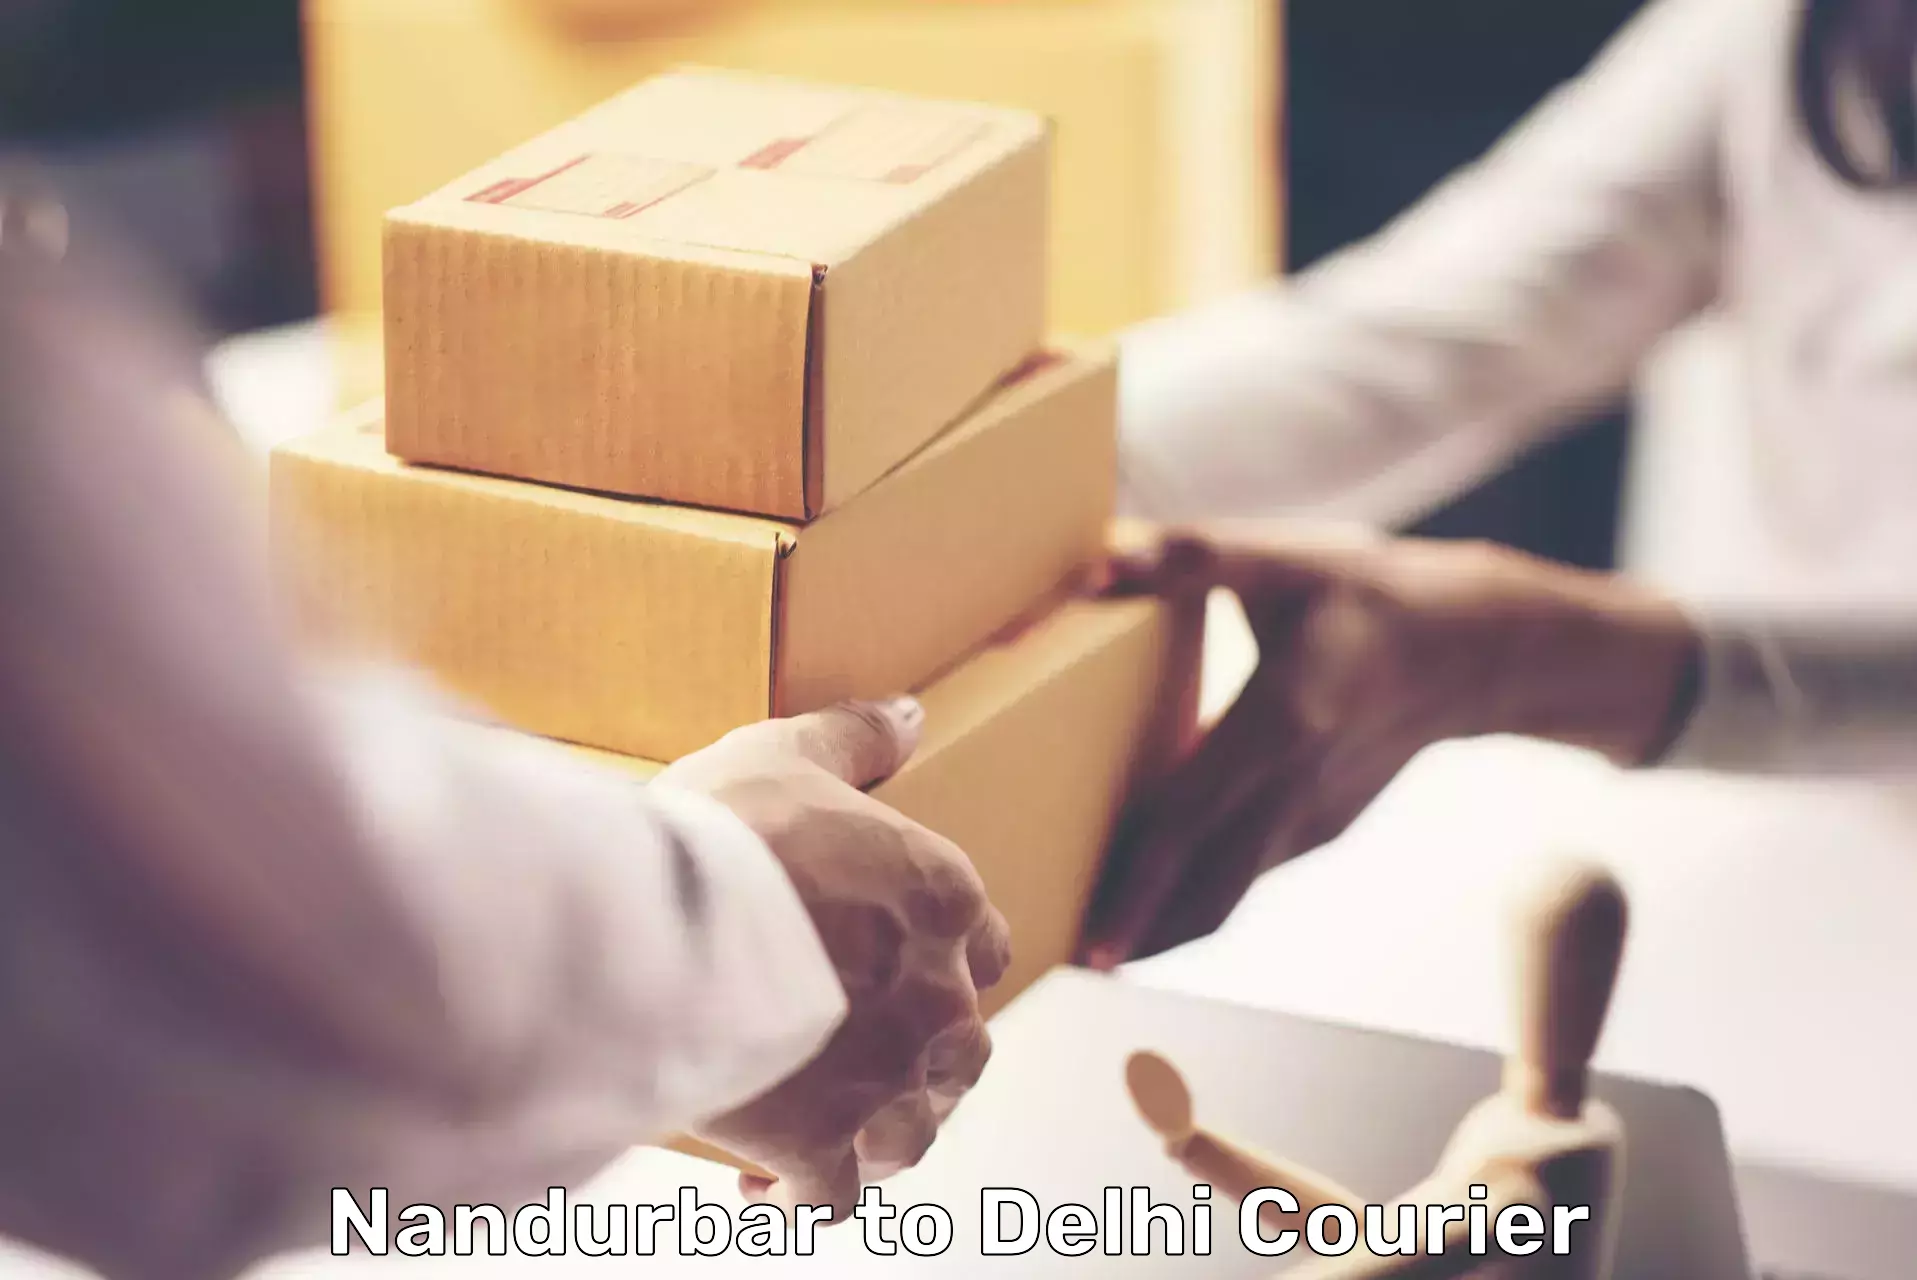 Large package courier Nandurbar to Burari